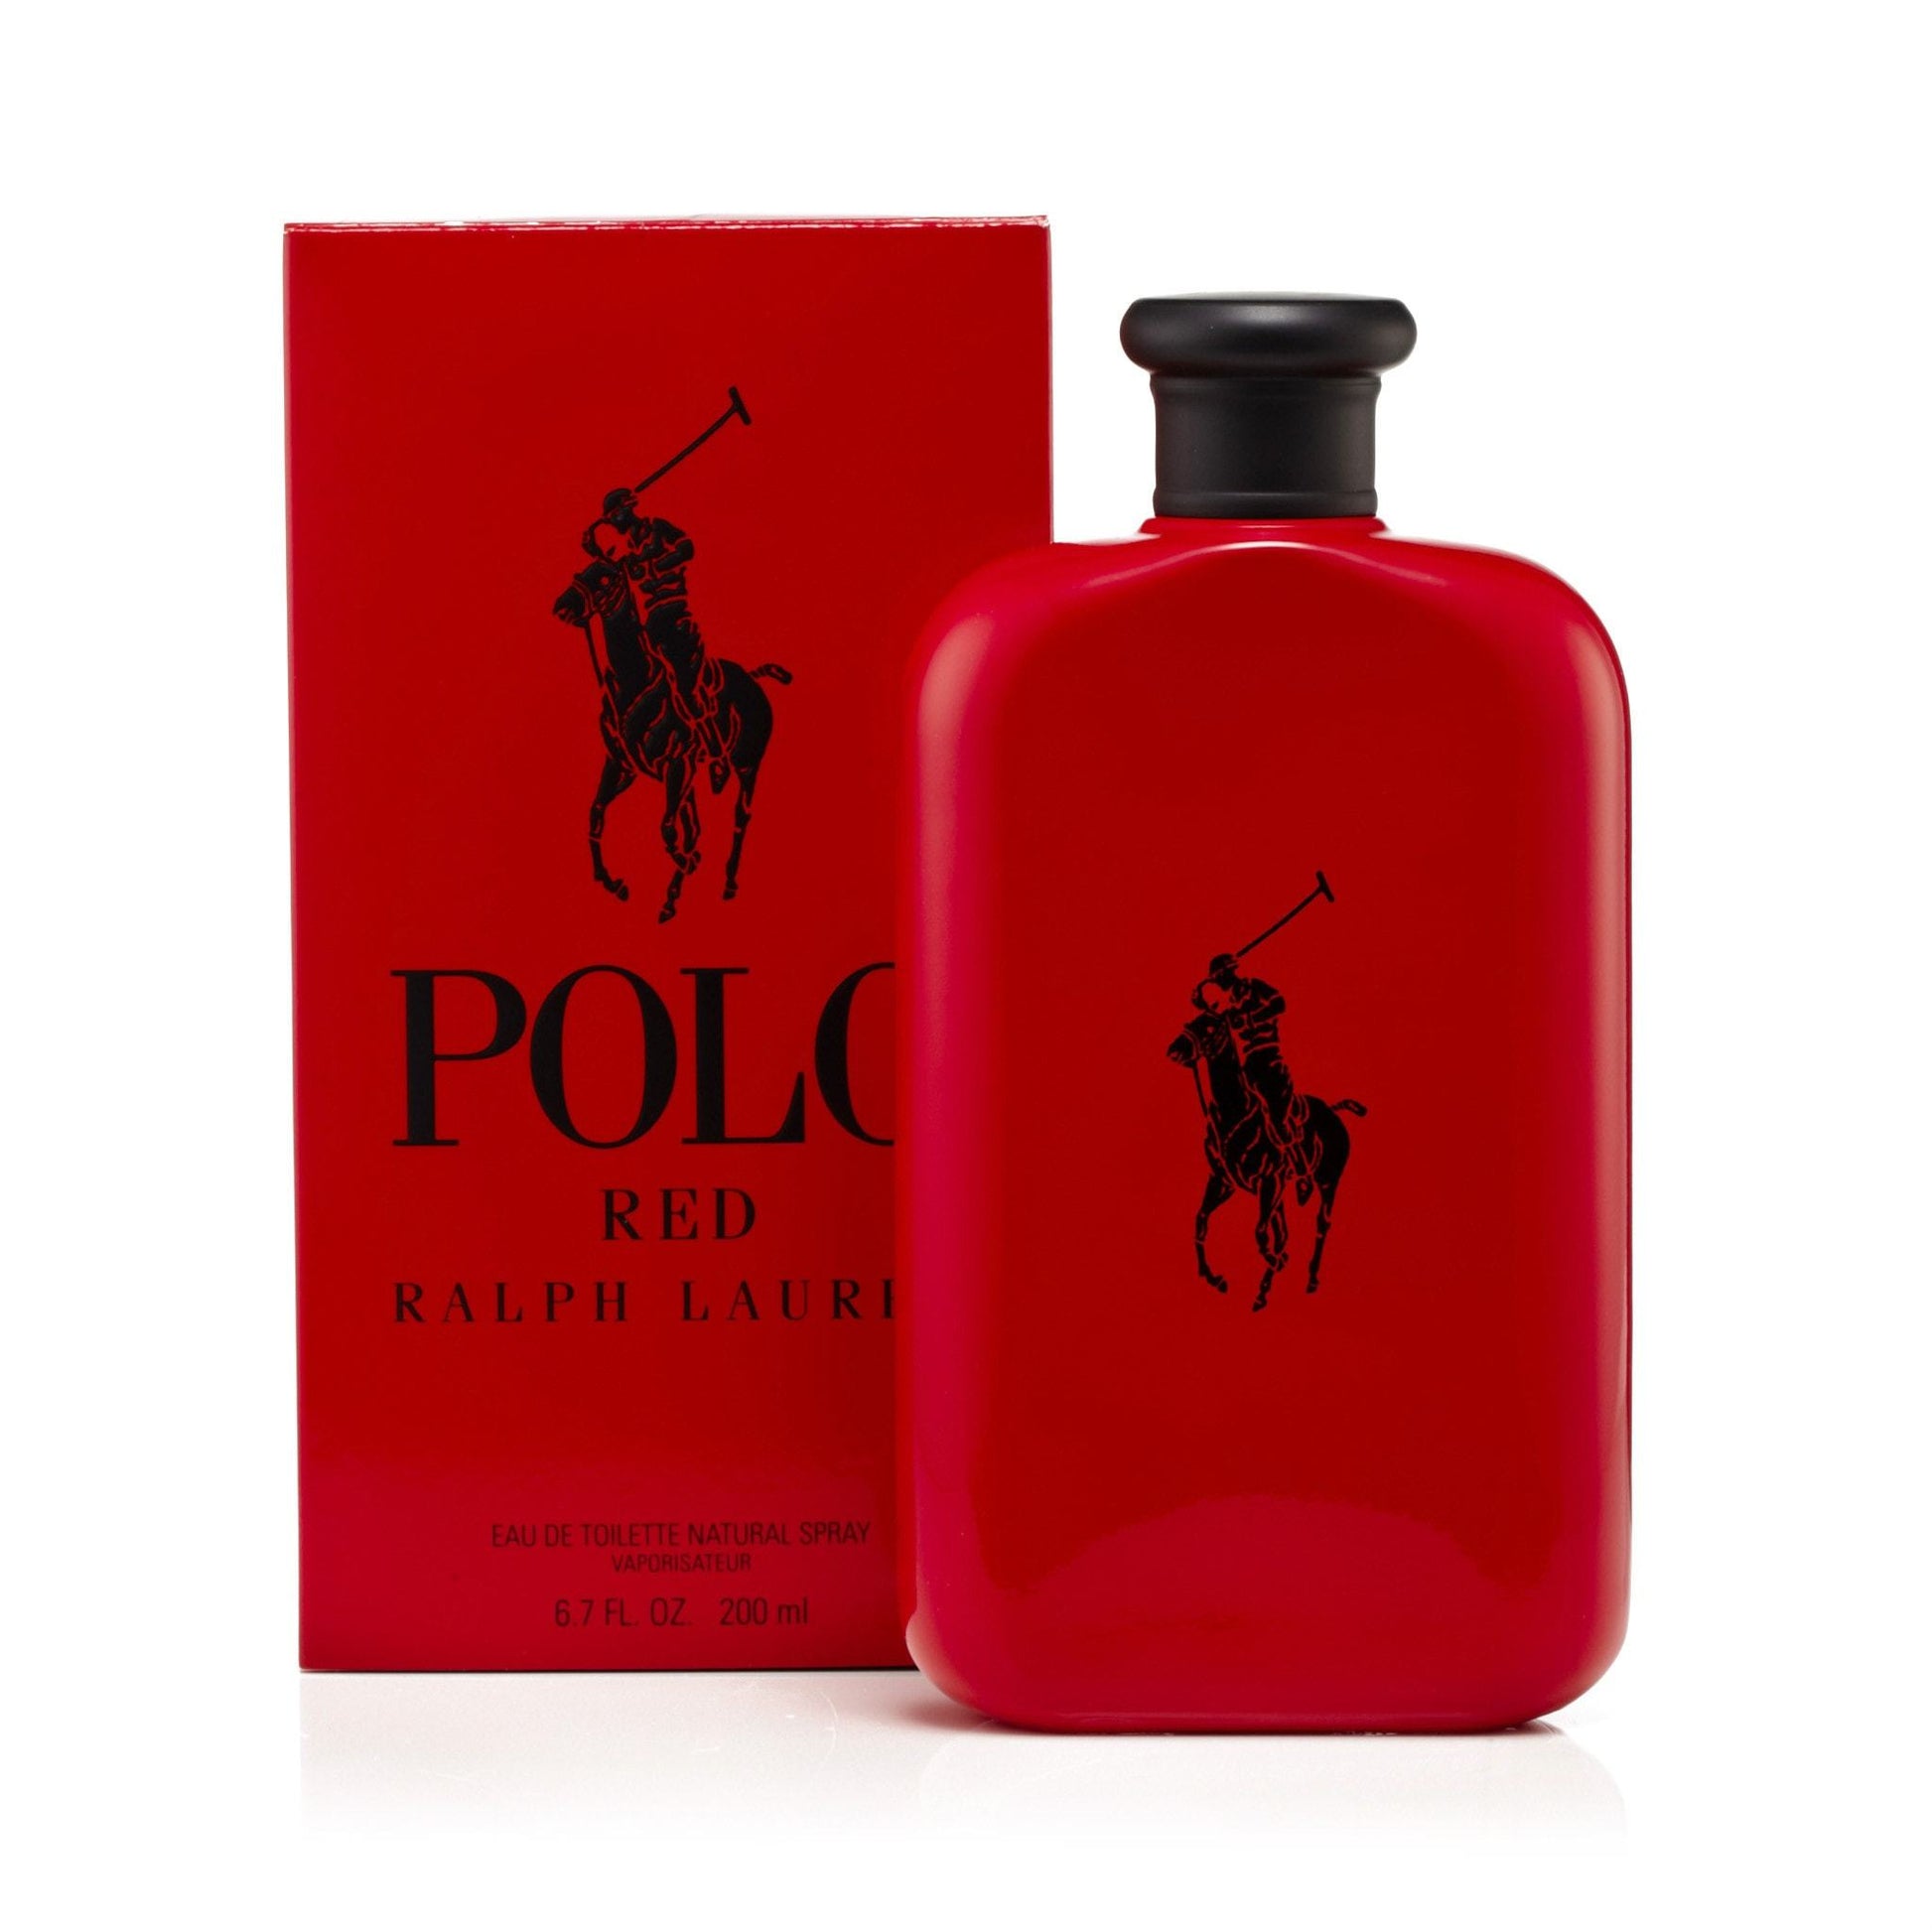 Polo Red Eau de Toilette Spray for Men by Ralph Lauren, Product image 7